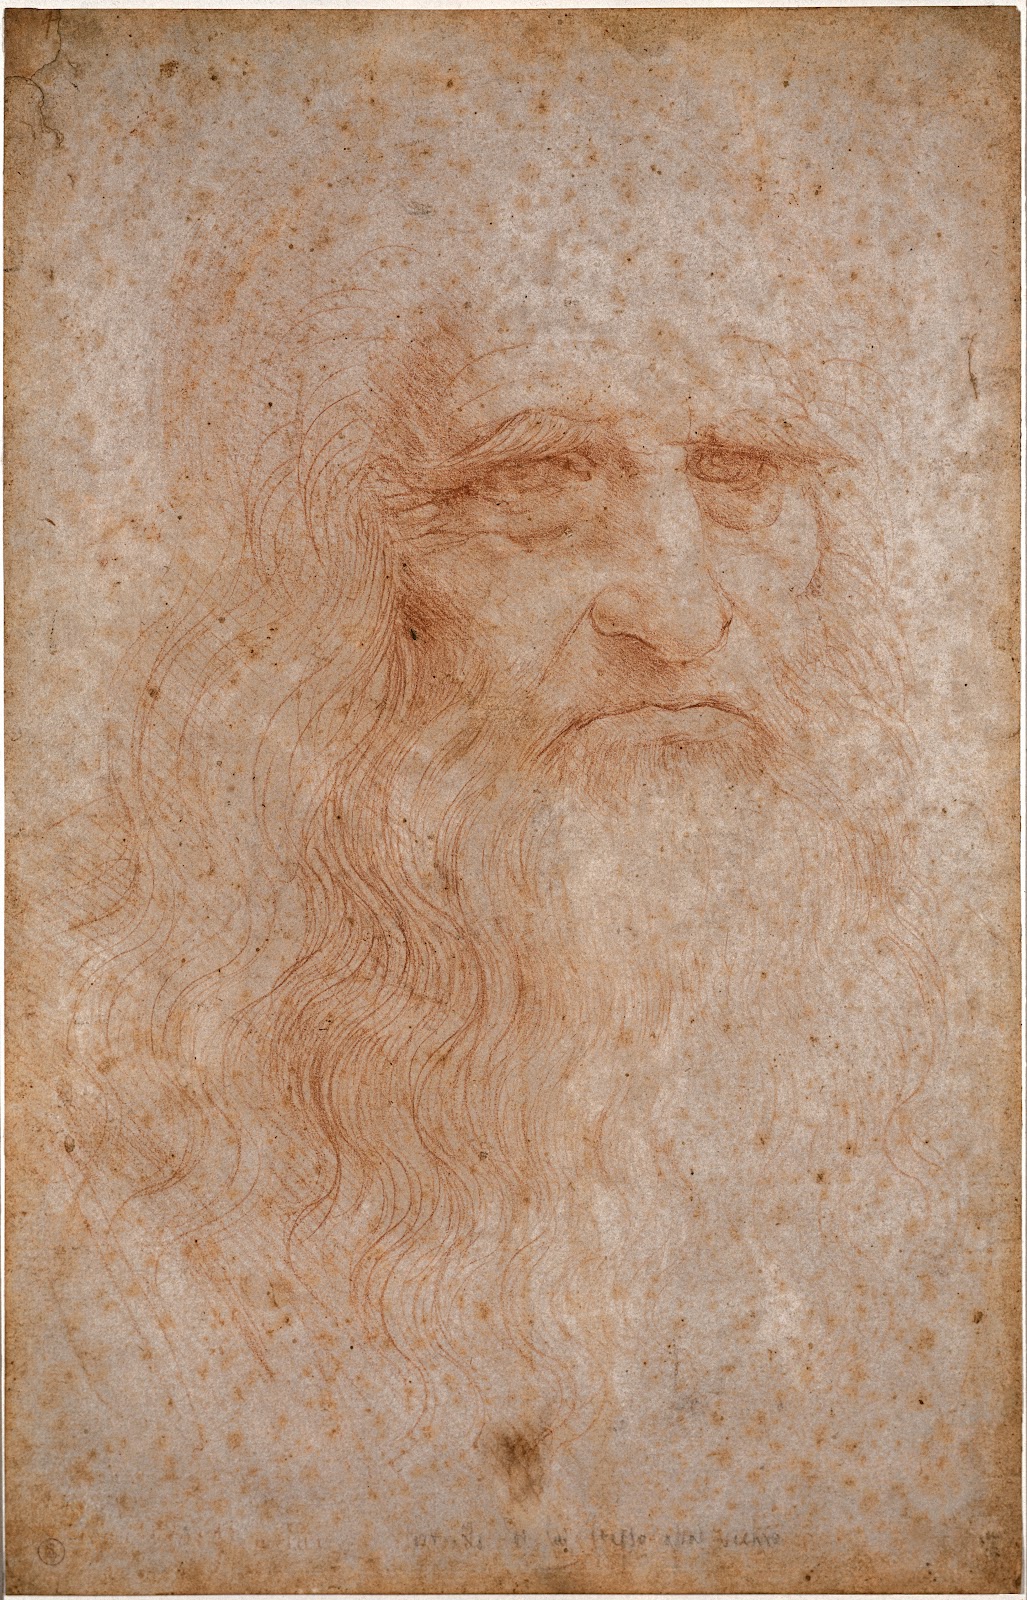 レオナルド・ダ・ヴィンチが描いたと推定される髭を伸ばした自画像